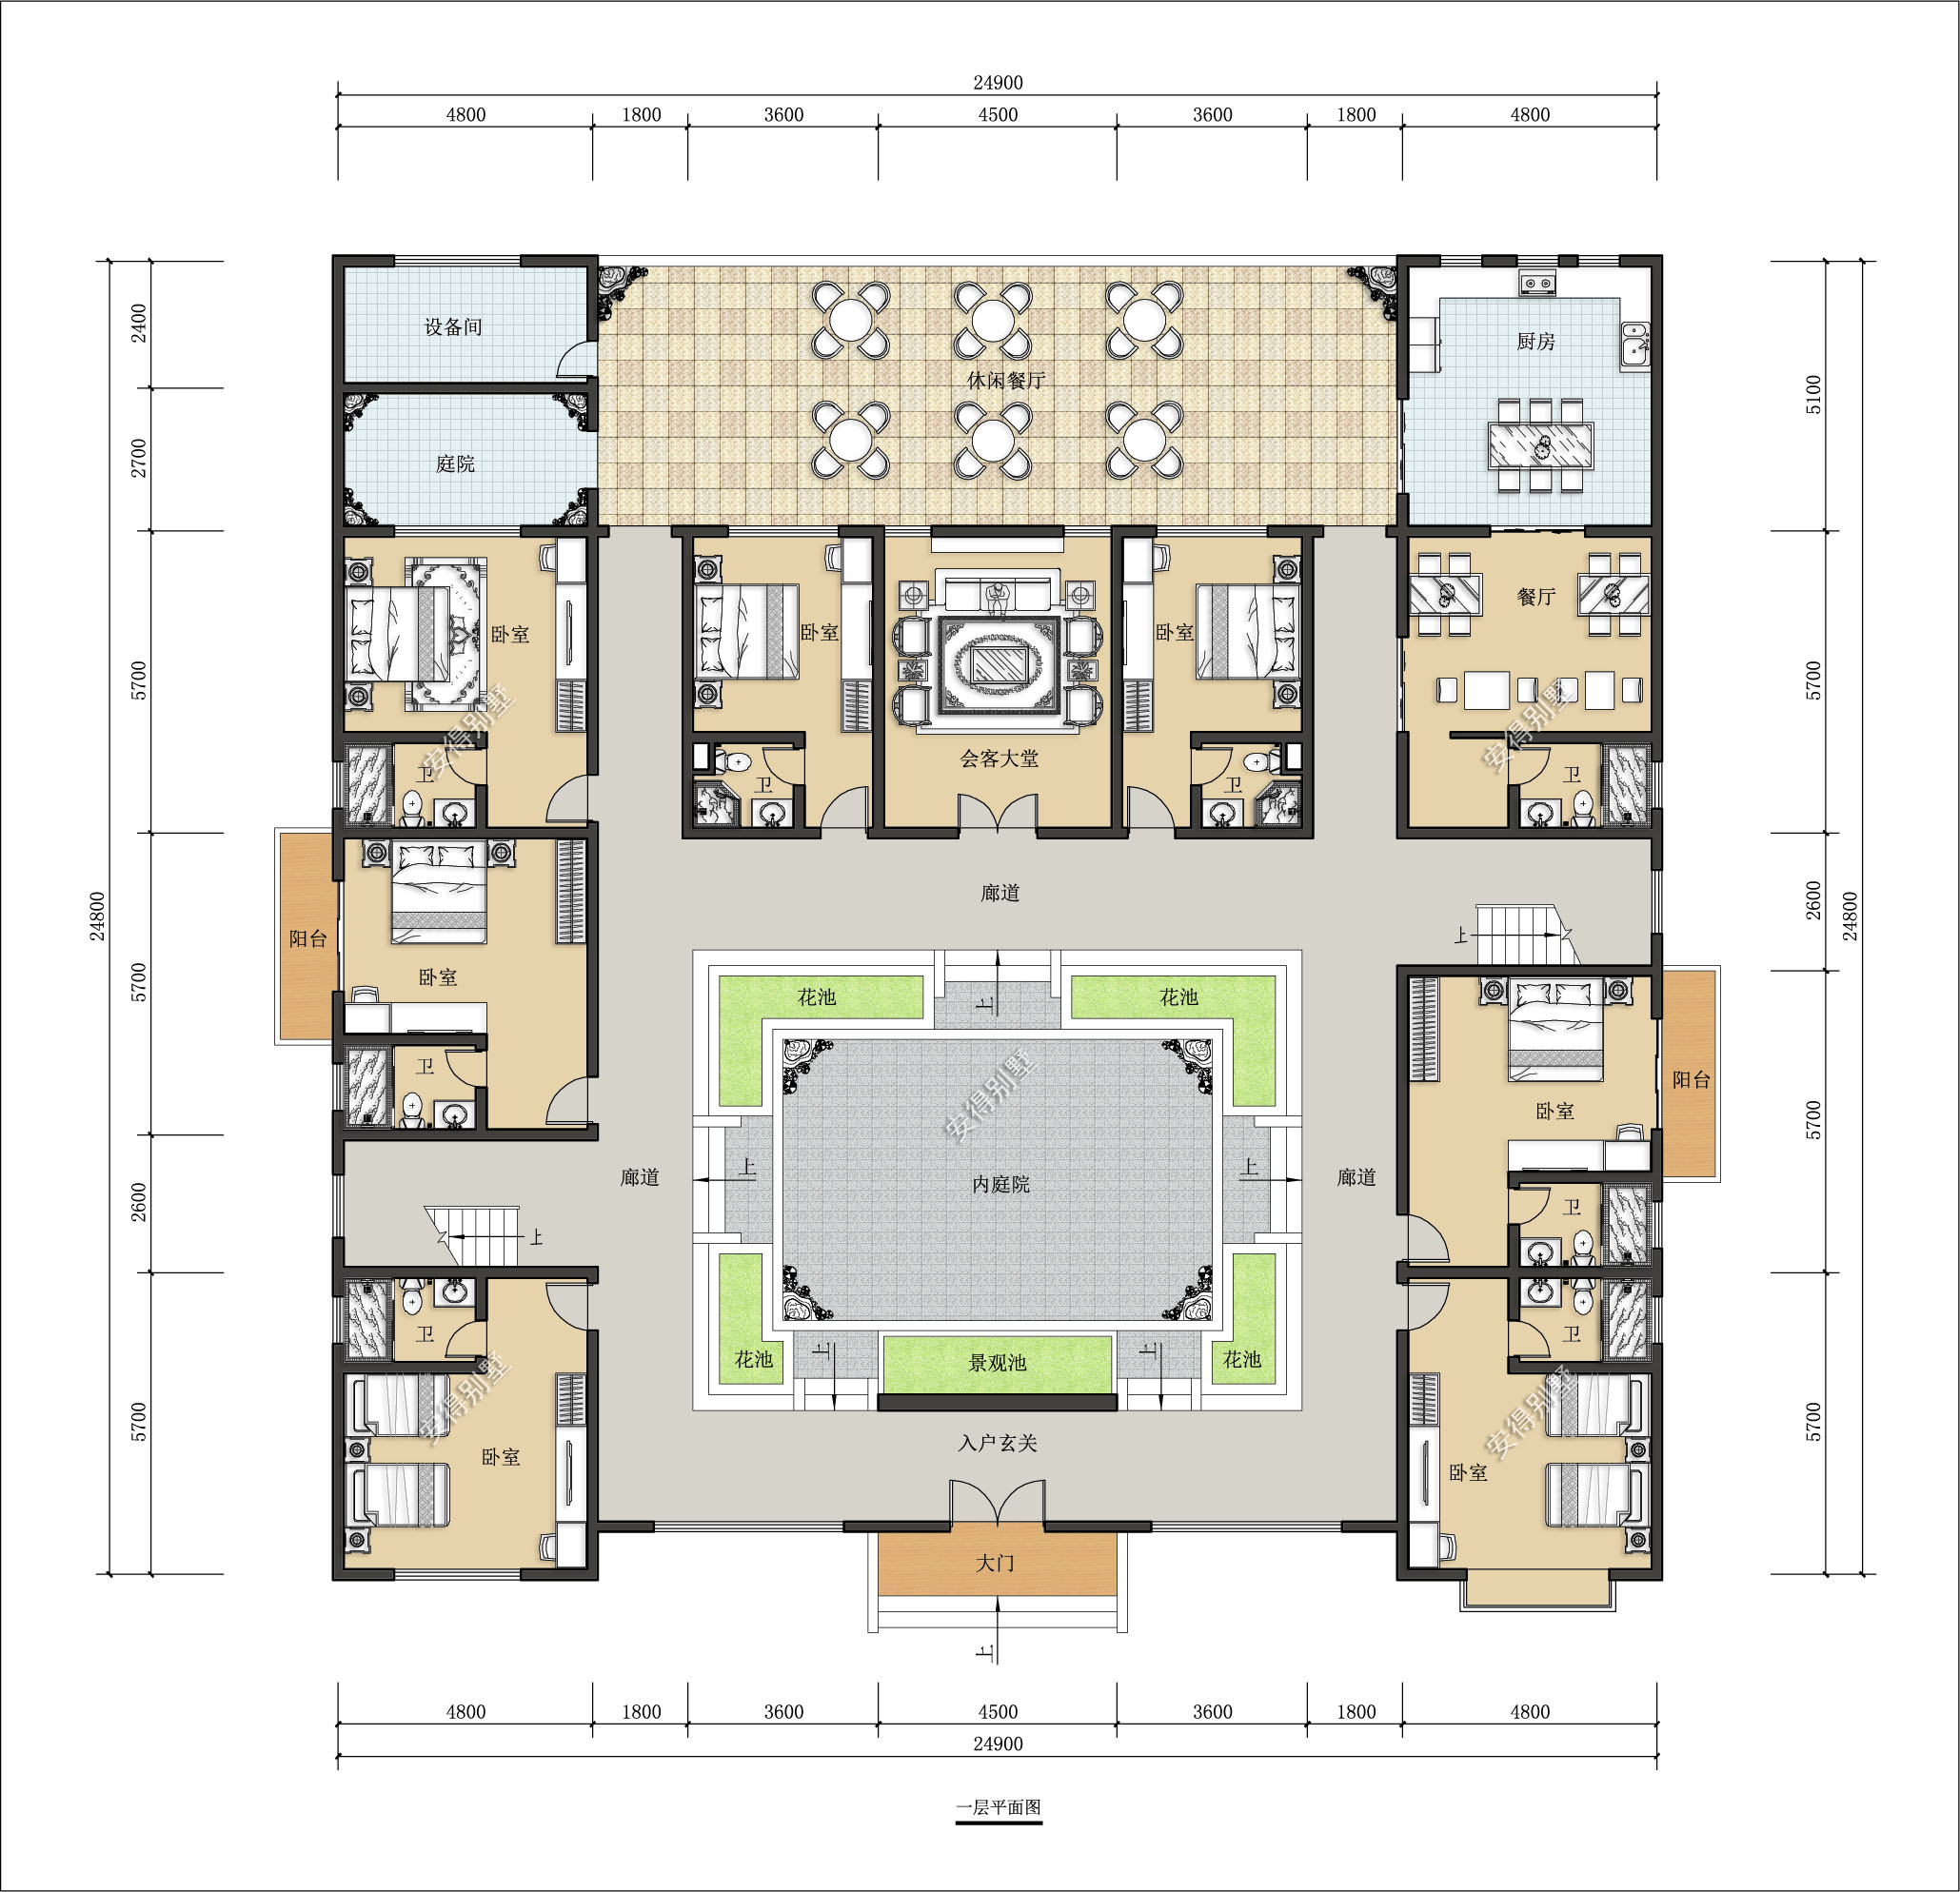 四合院平面设计如下:共9间卧室套房,1间会客大厅,厨房,餐厅和一处超大